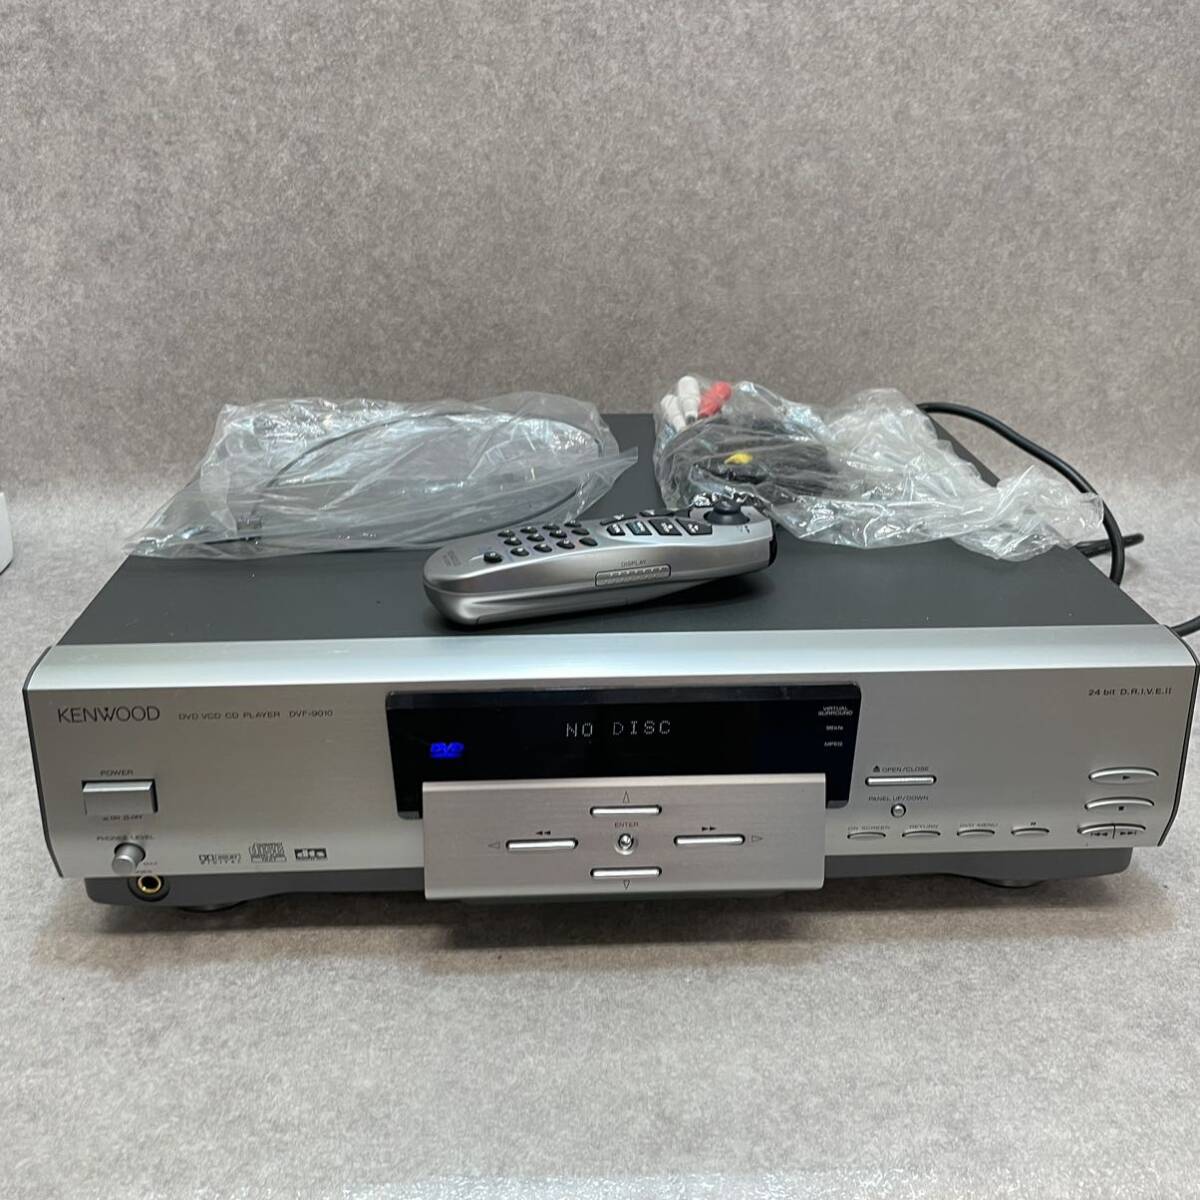 a5006*KENWOOD DVF-9010 DVD VCD CD PLAYER origin box attaching 